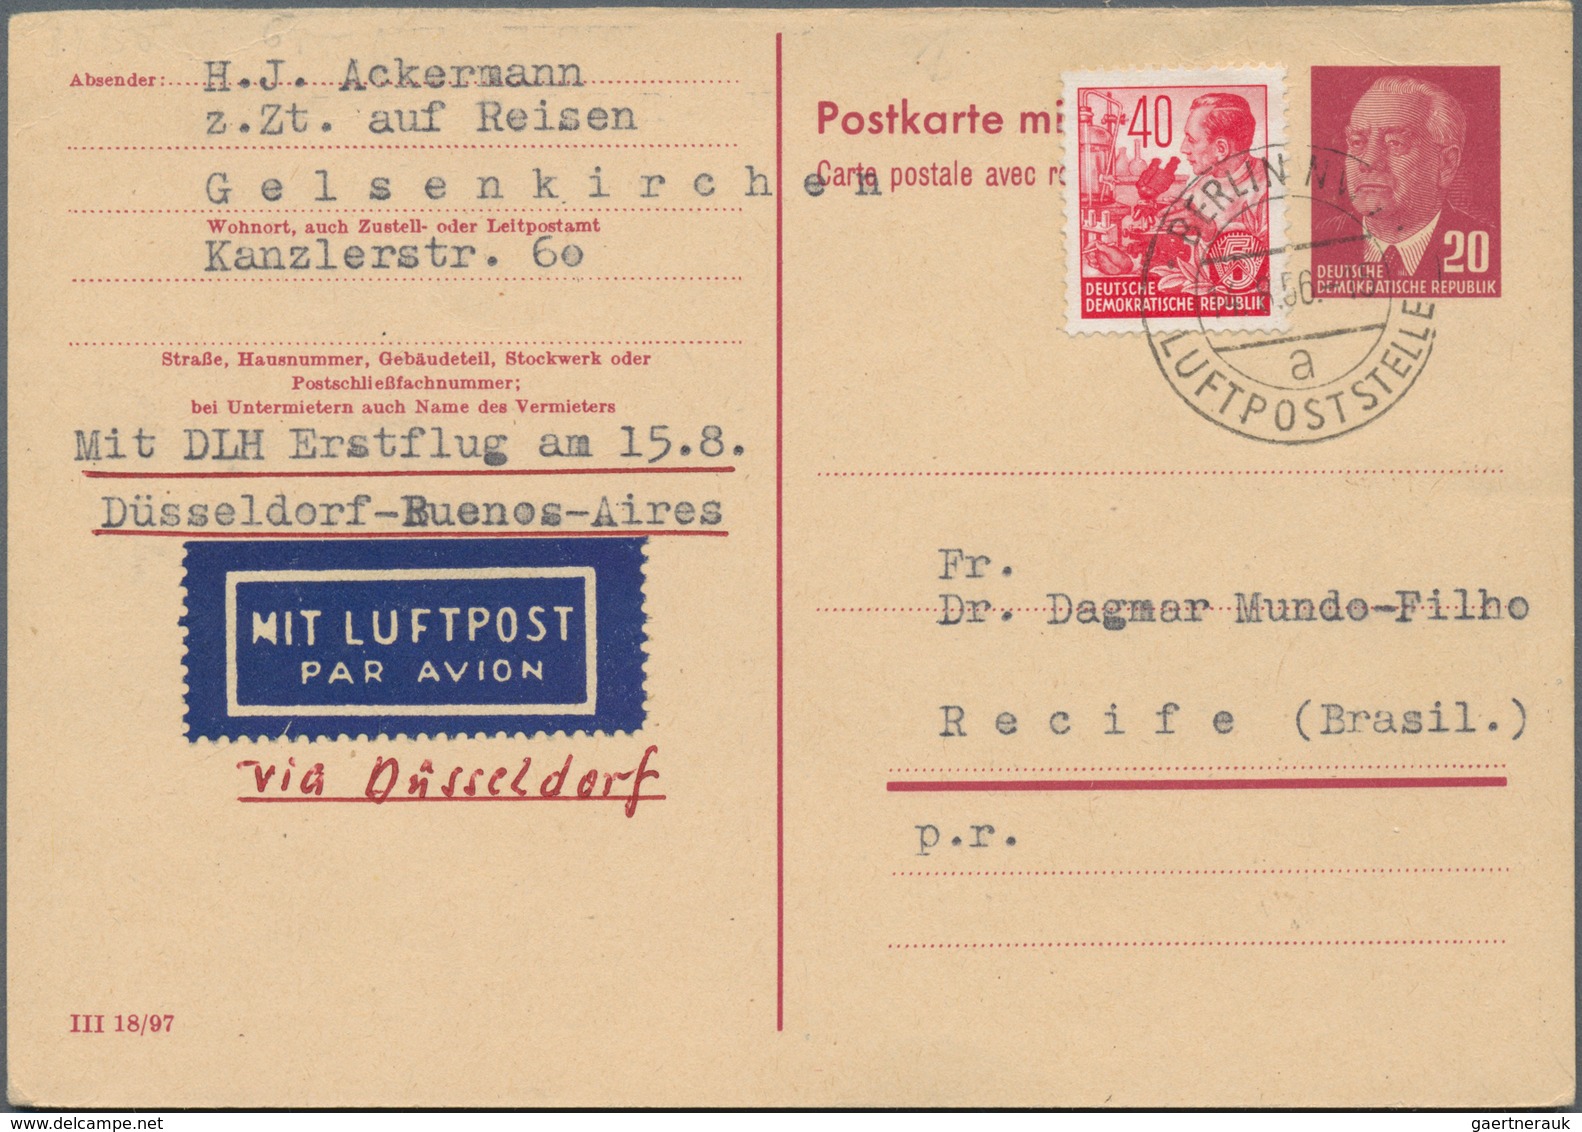 Deutschland - Ganzsachen: Ab 1872. Sehr umfangreiche und gehaltvolle Sammlung "Deutsche Ganzsachen"